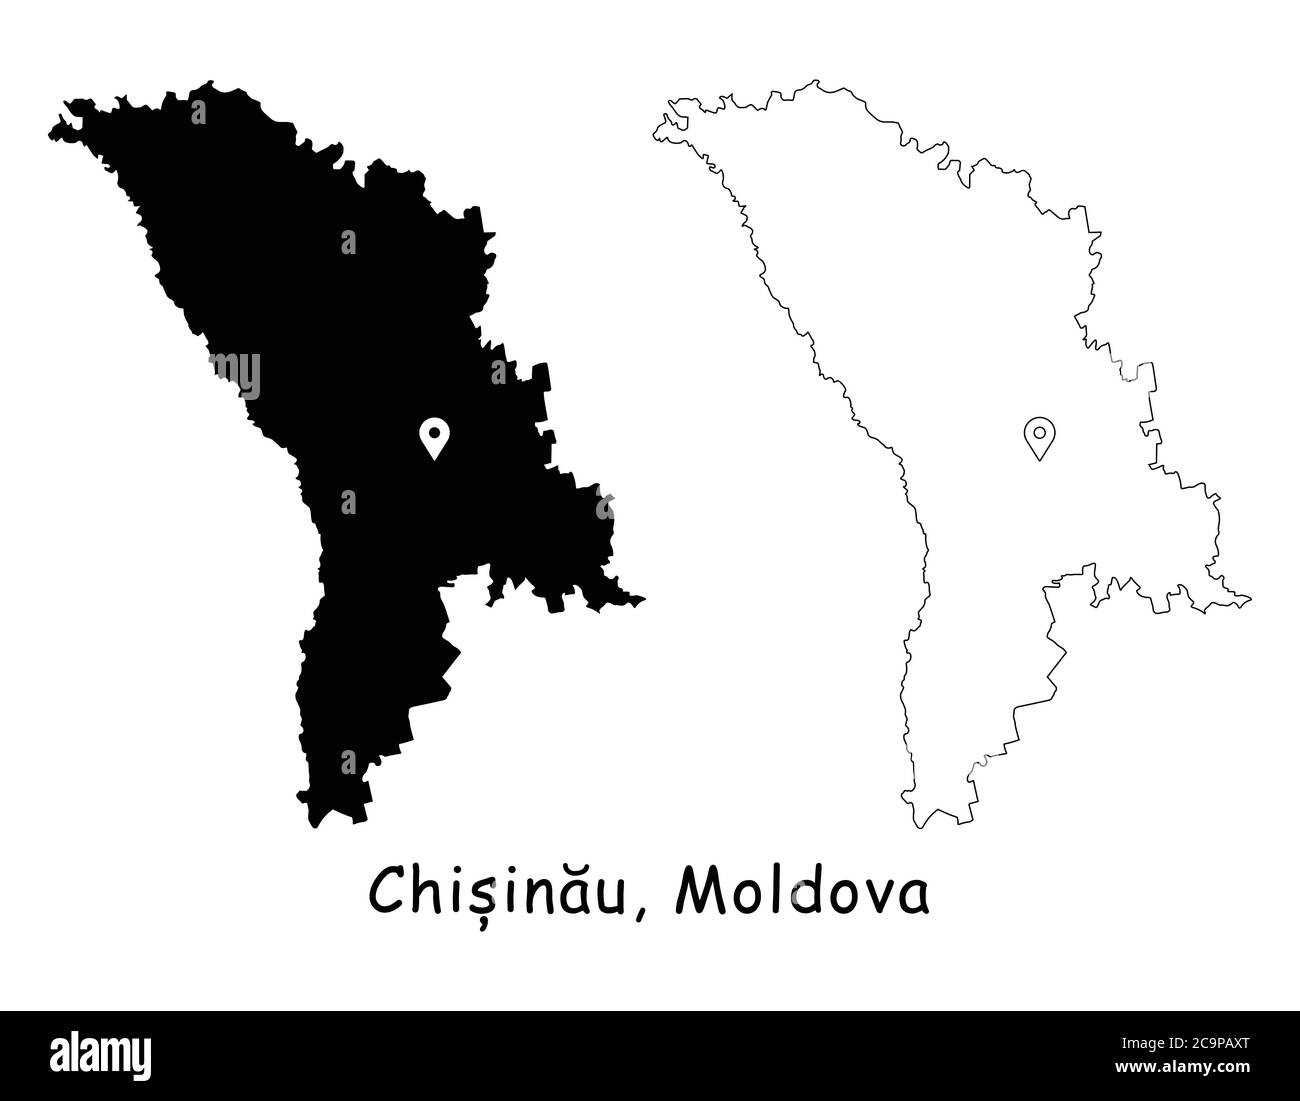 Chisinau, Moldawien. Detaillierte Landkarte mit Lage Pin auf Hauptstadt. Schwarze Silhouette und Umrisskarten isoliert auf weißem Hintergrund. EPS-Vektor Stock Vektor